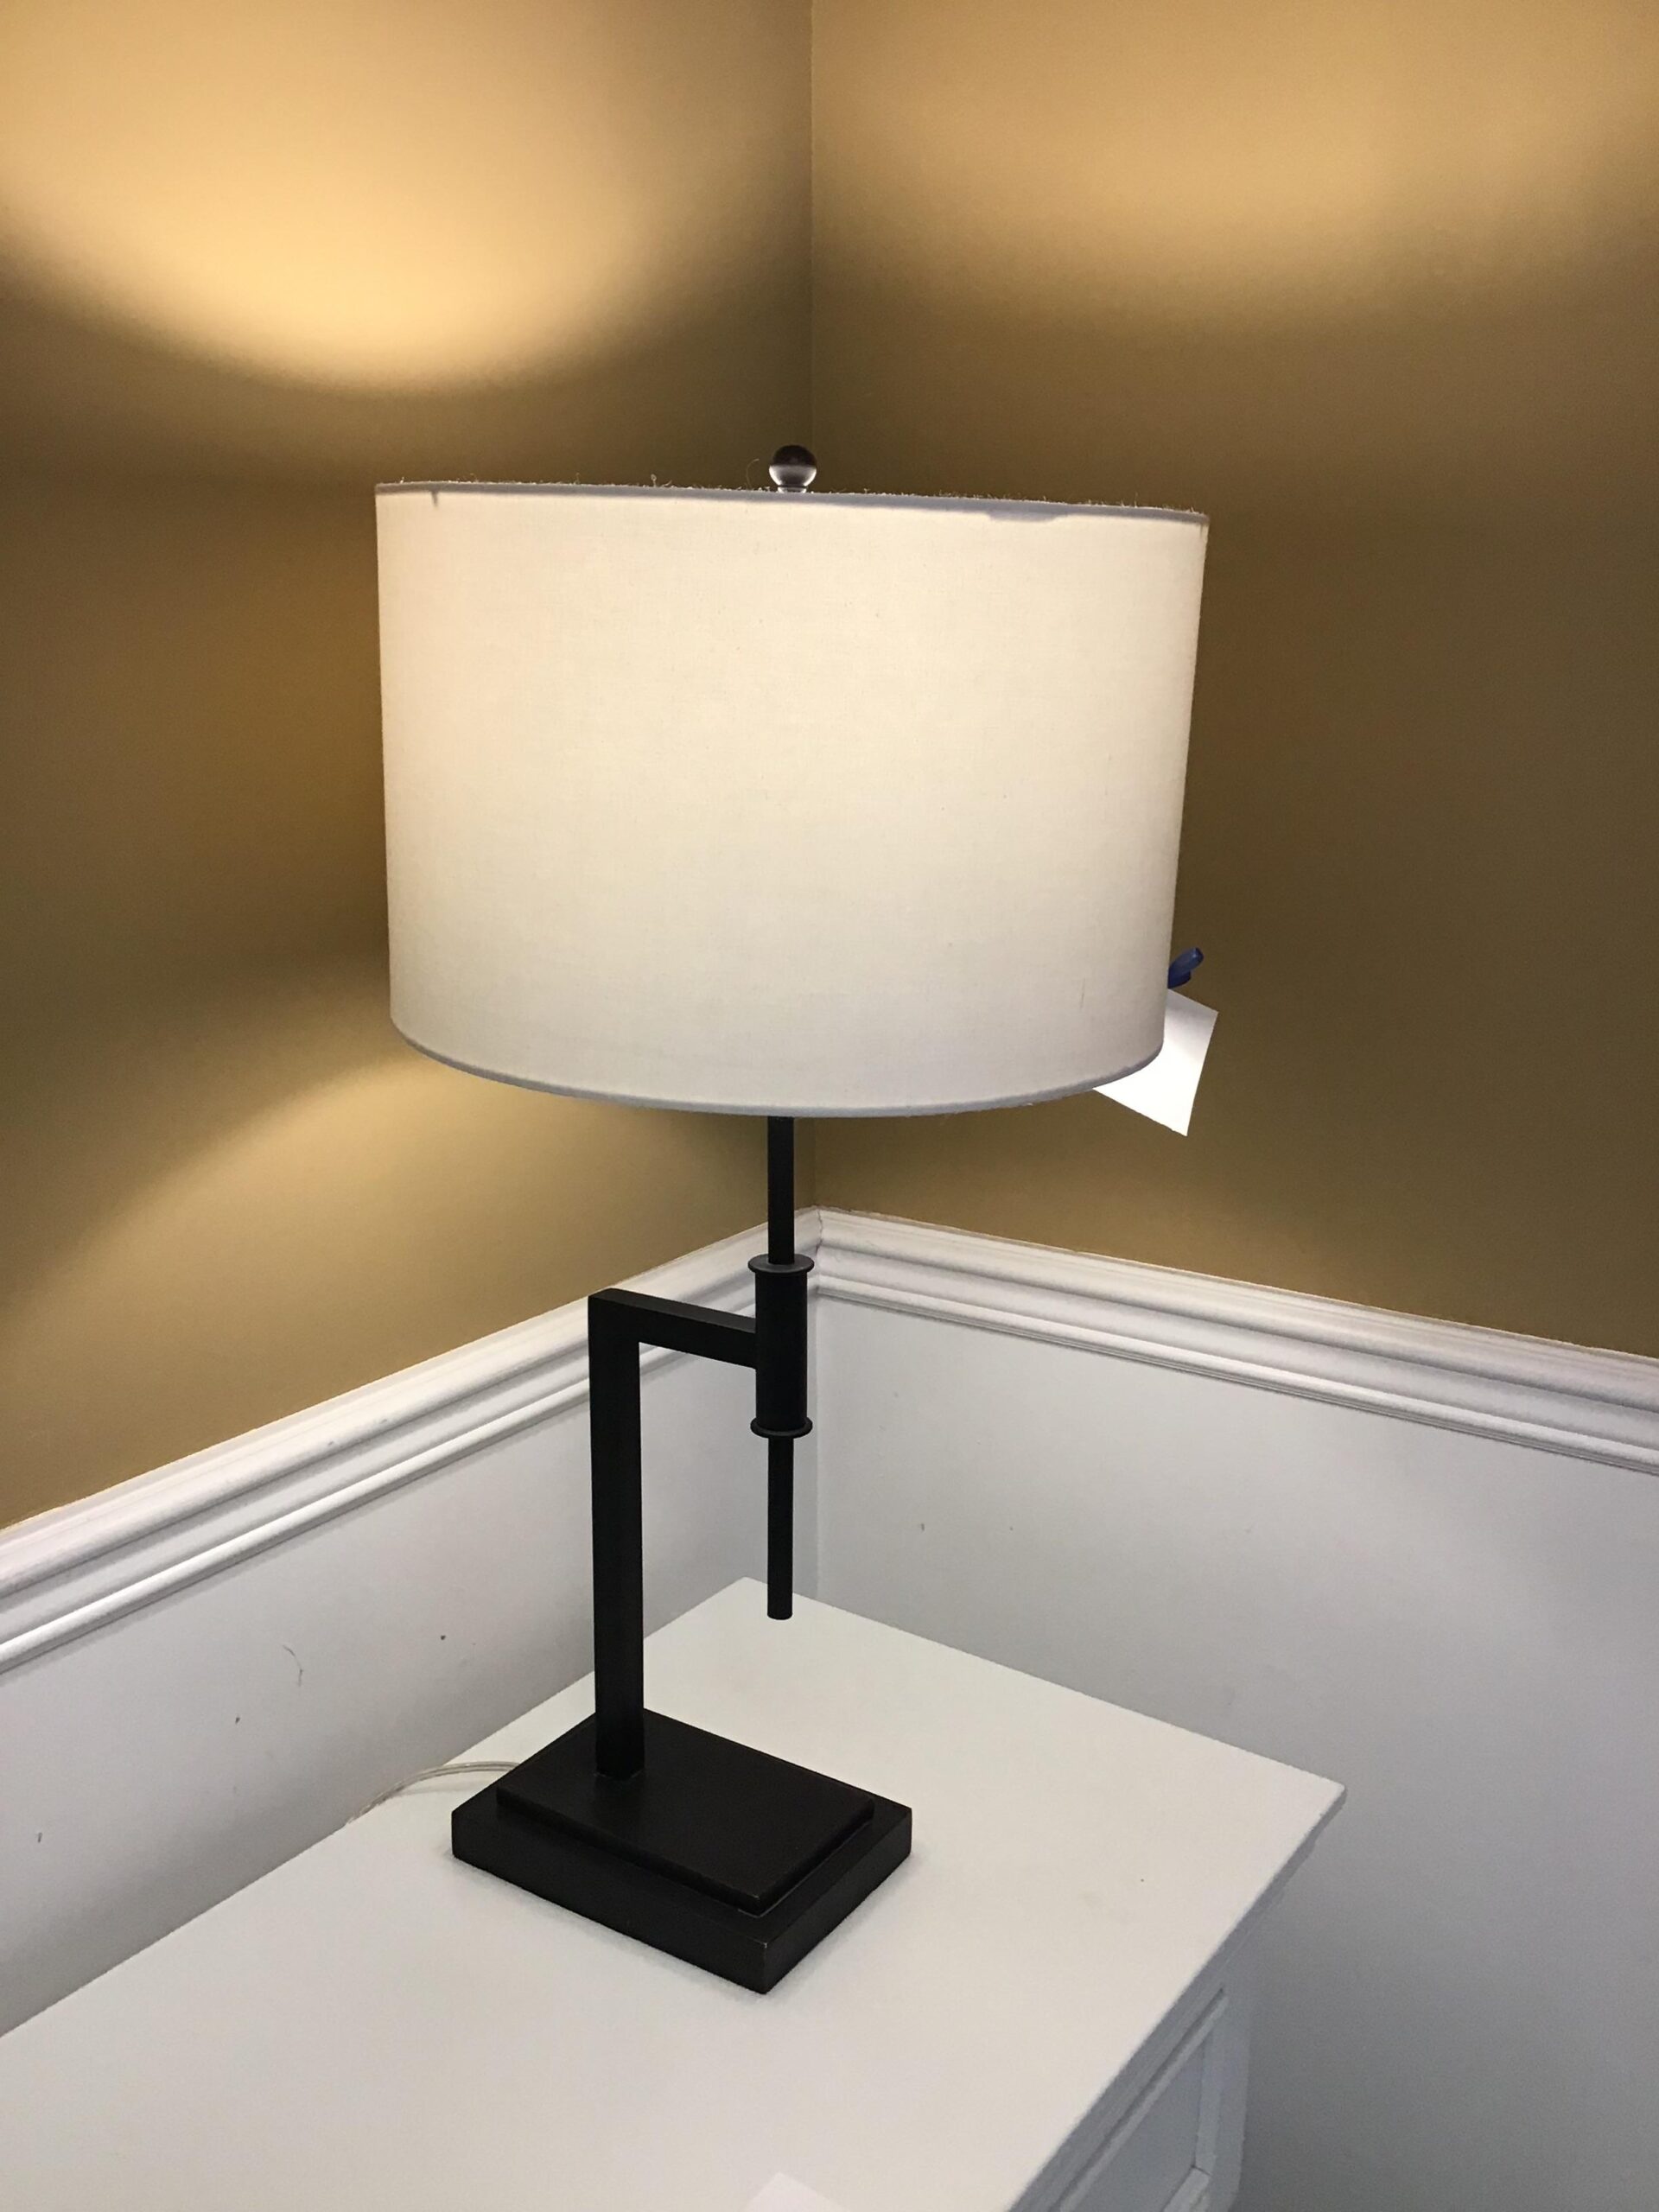 Williams Sonoma “Atticus” Table Lamp